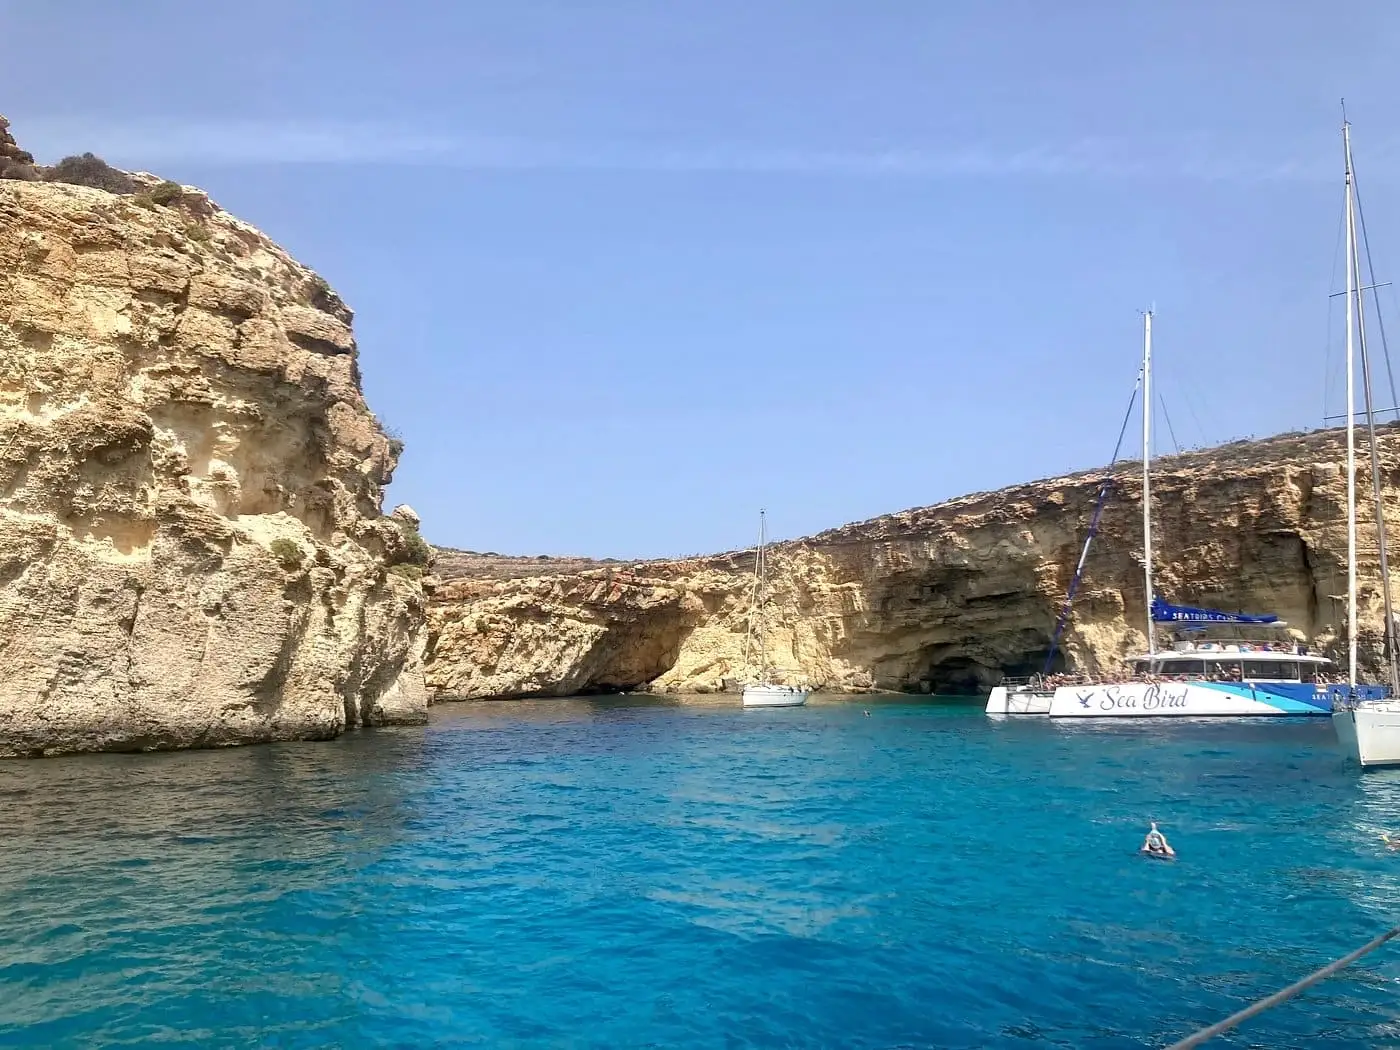 Catamaran in a cove in Malta